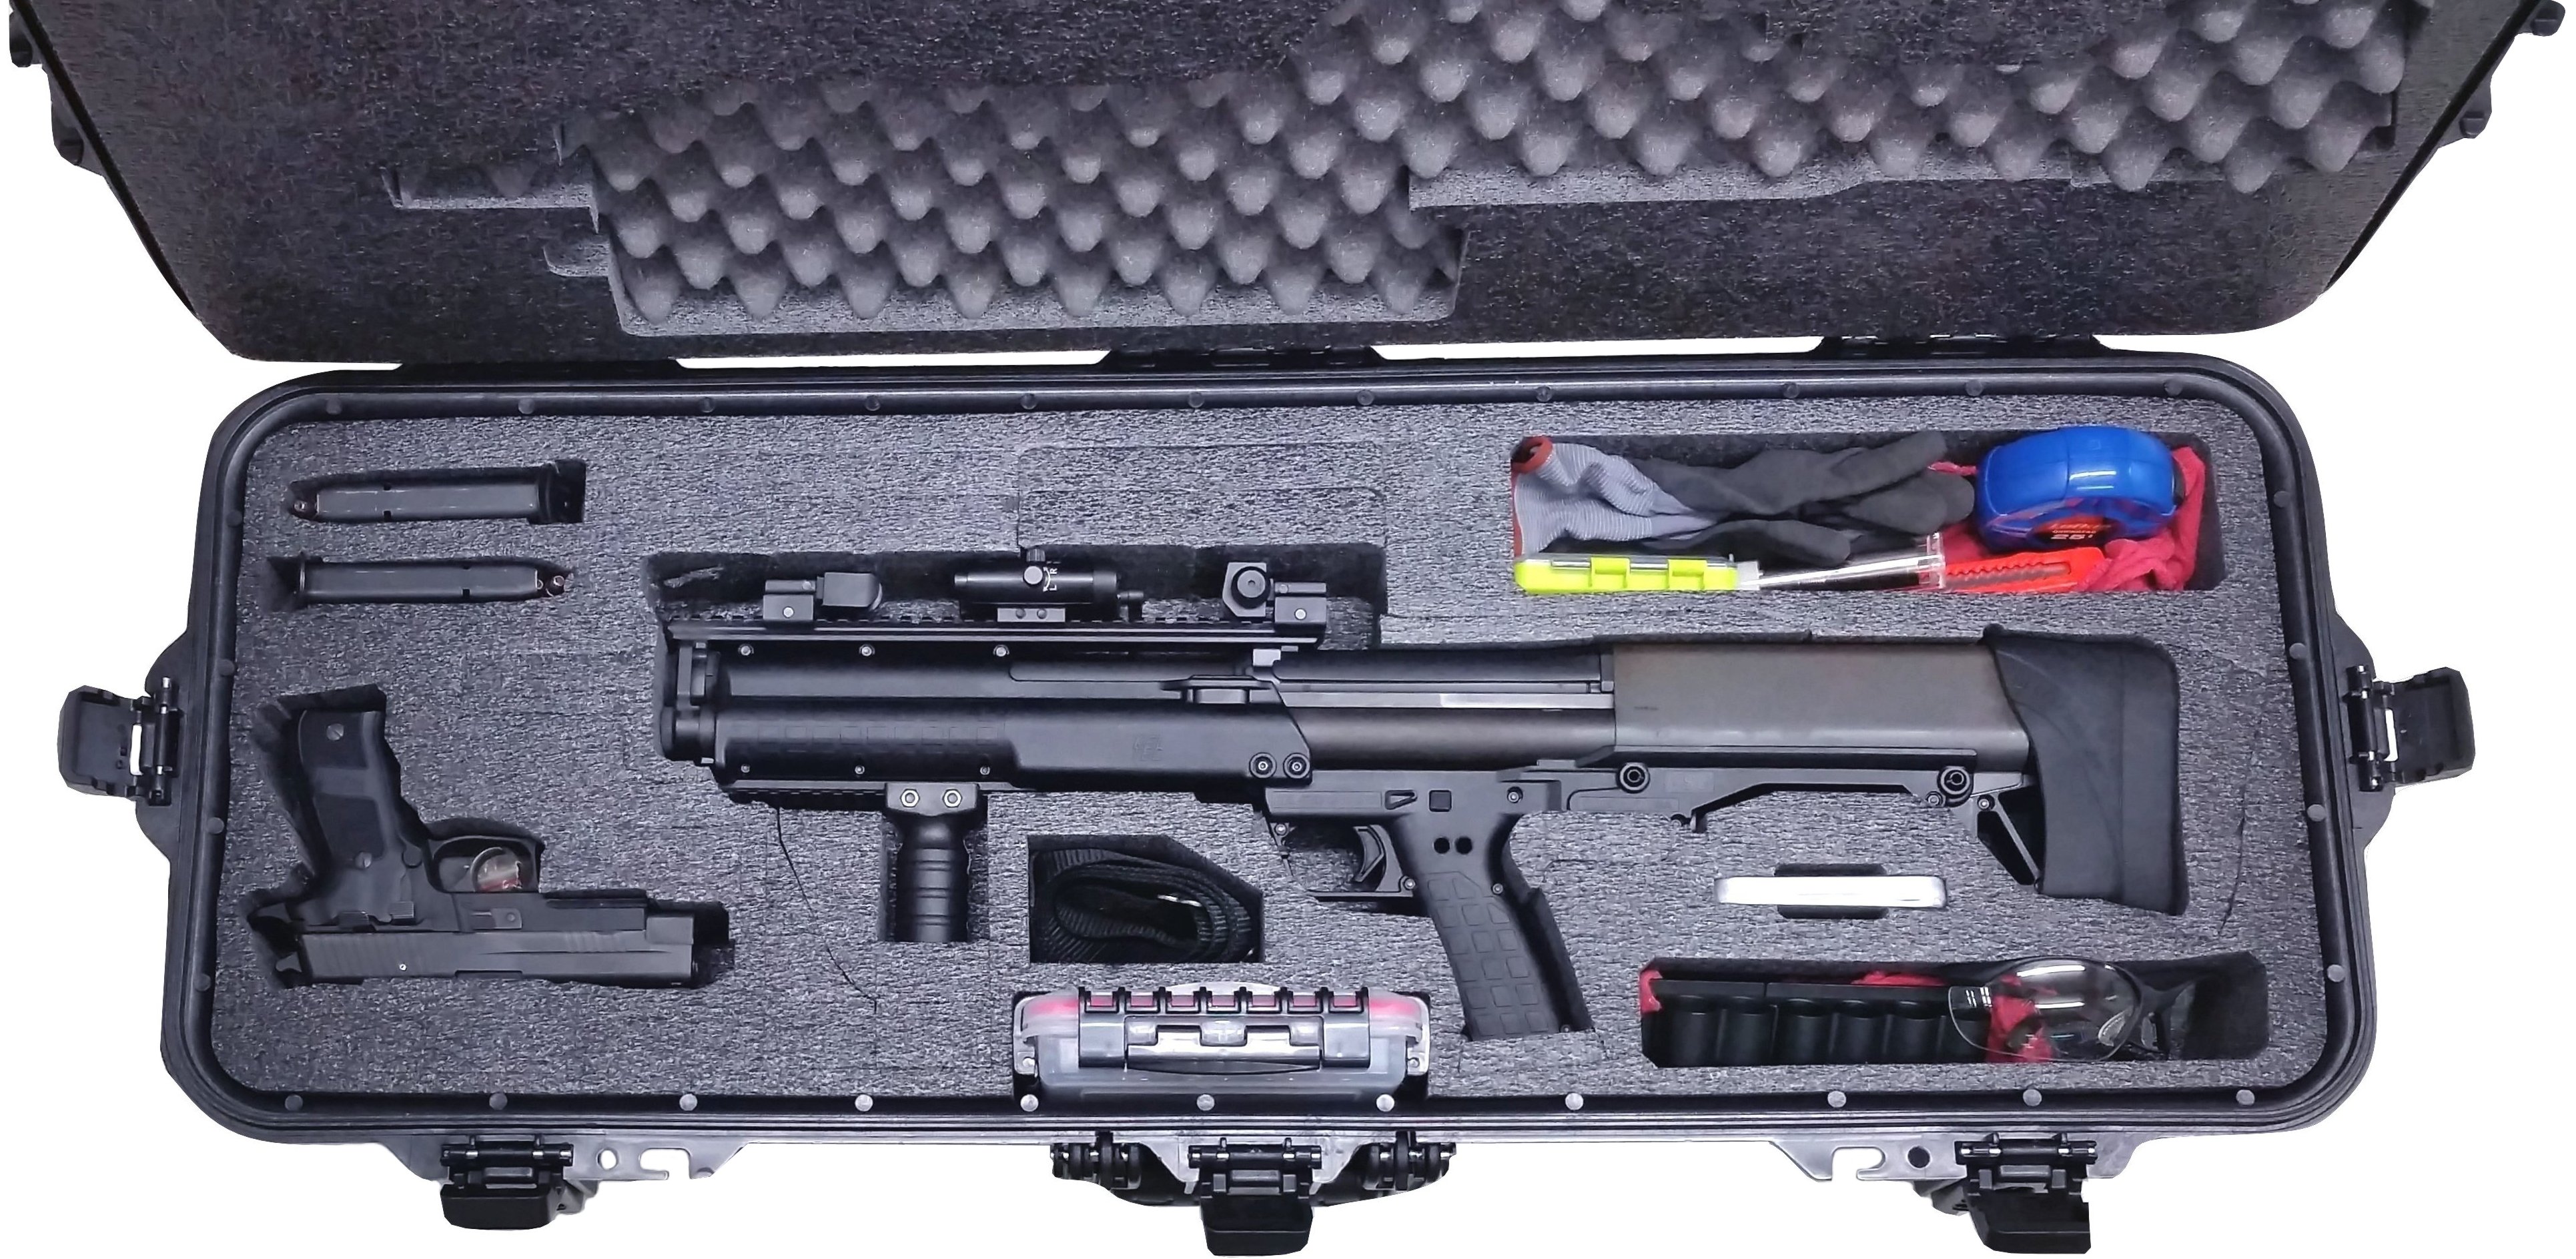 Case Club Waterproof Kel-Tec KSG & Std Mfg DP-12 Shotgun ...
 Ksg Accessories